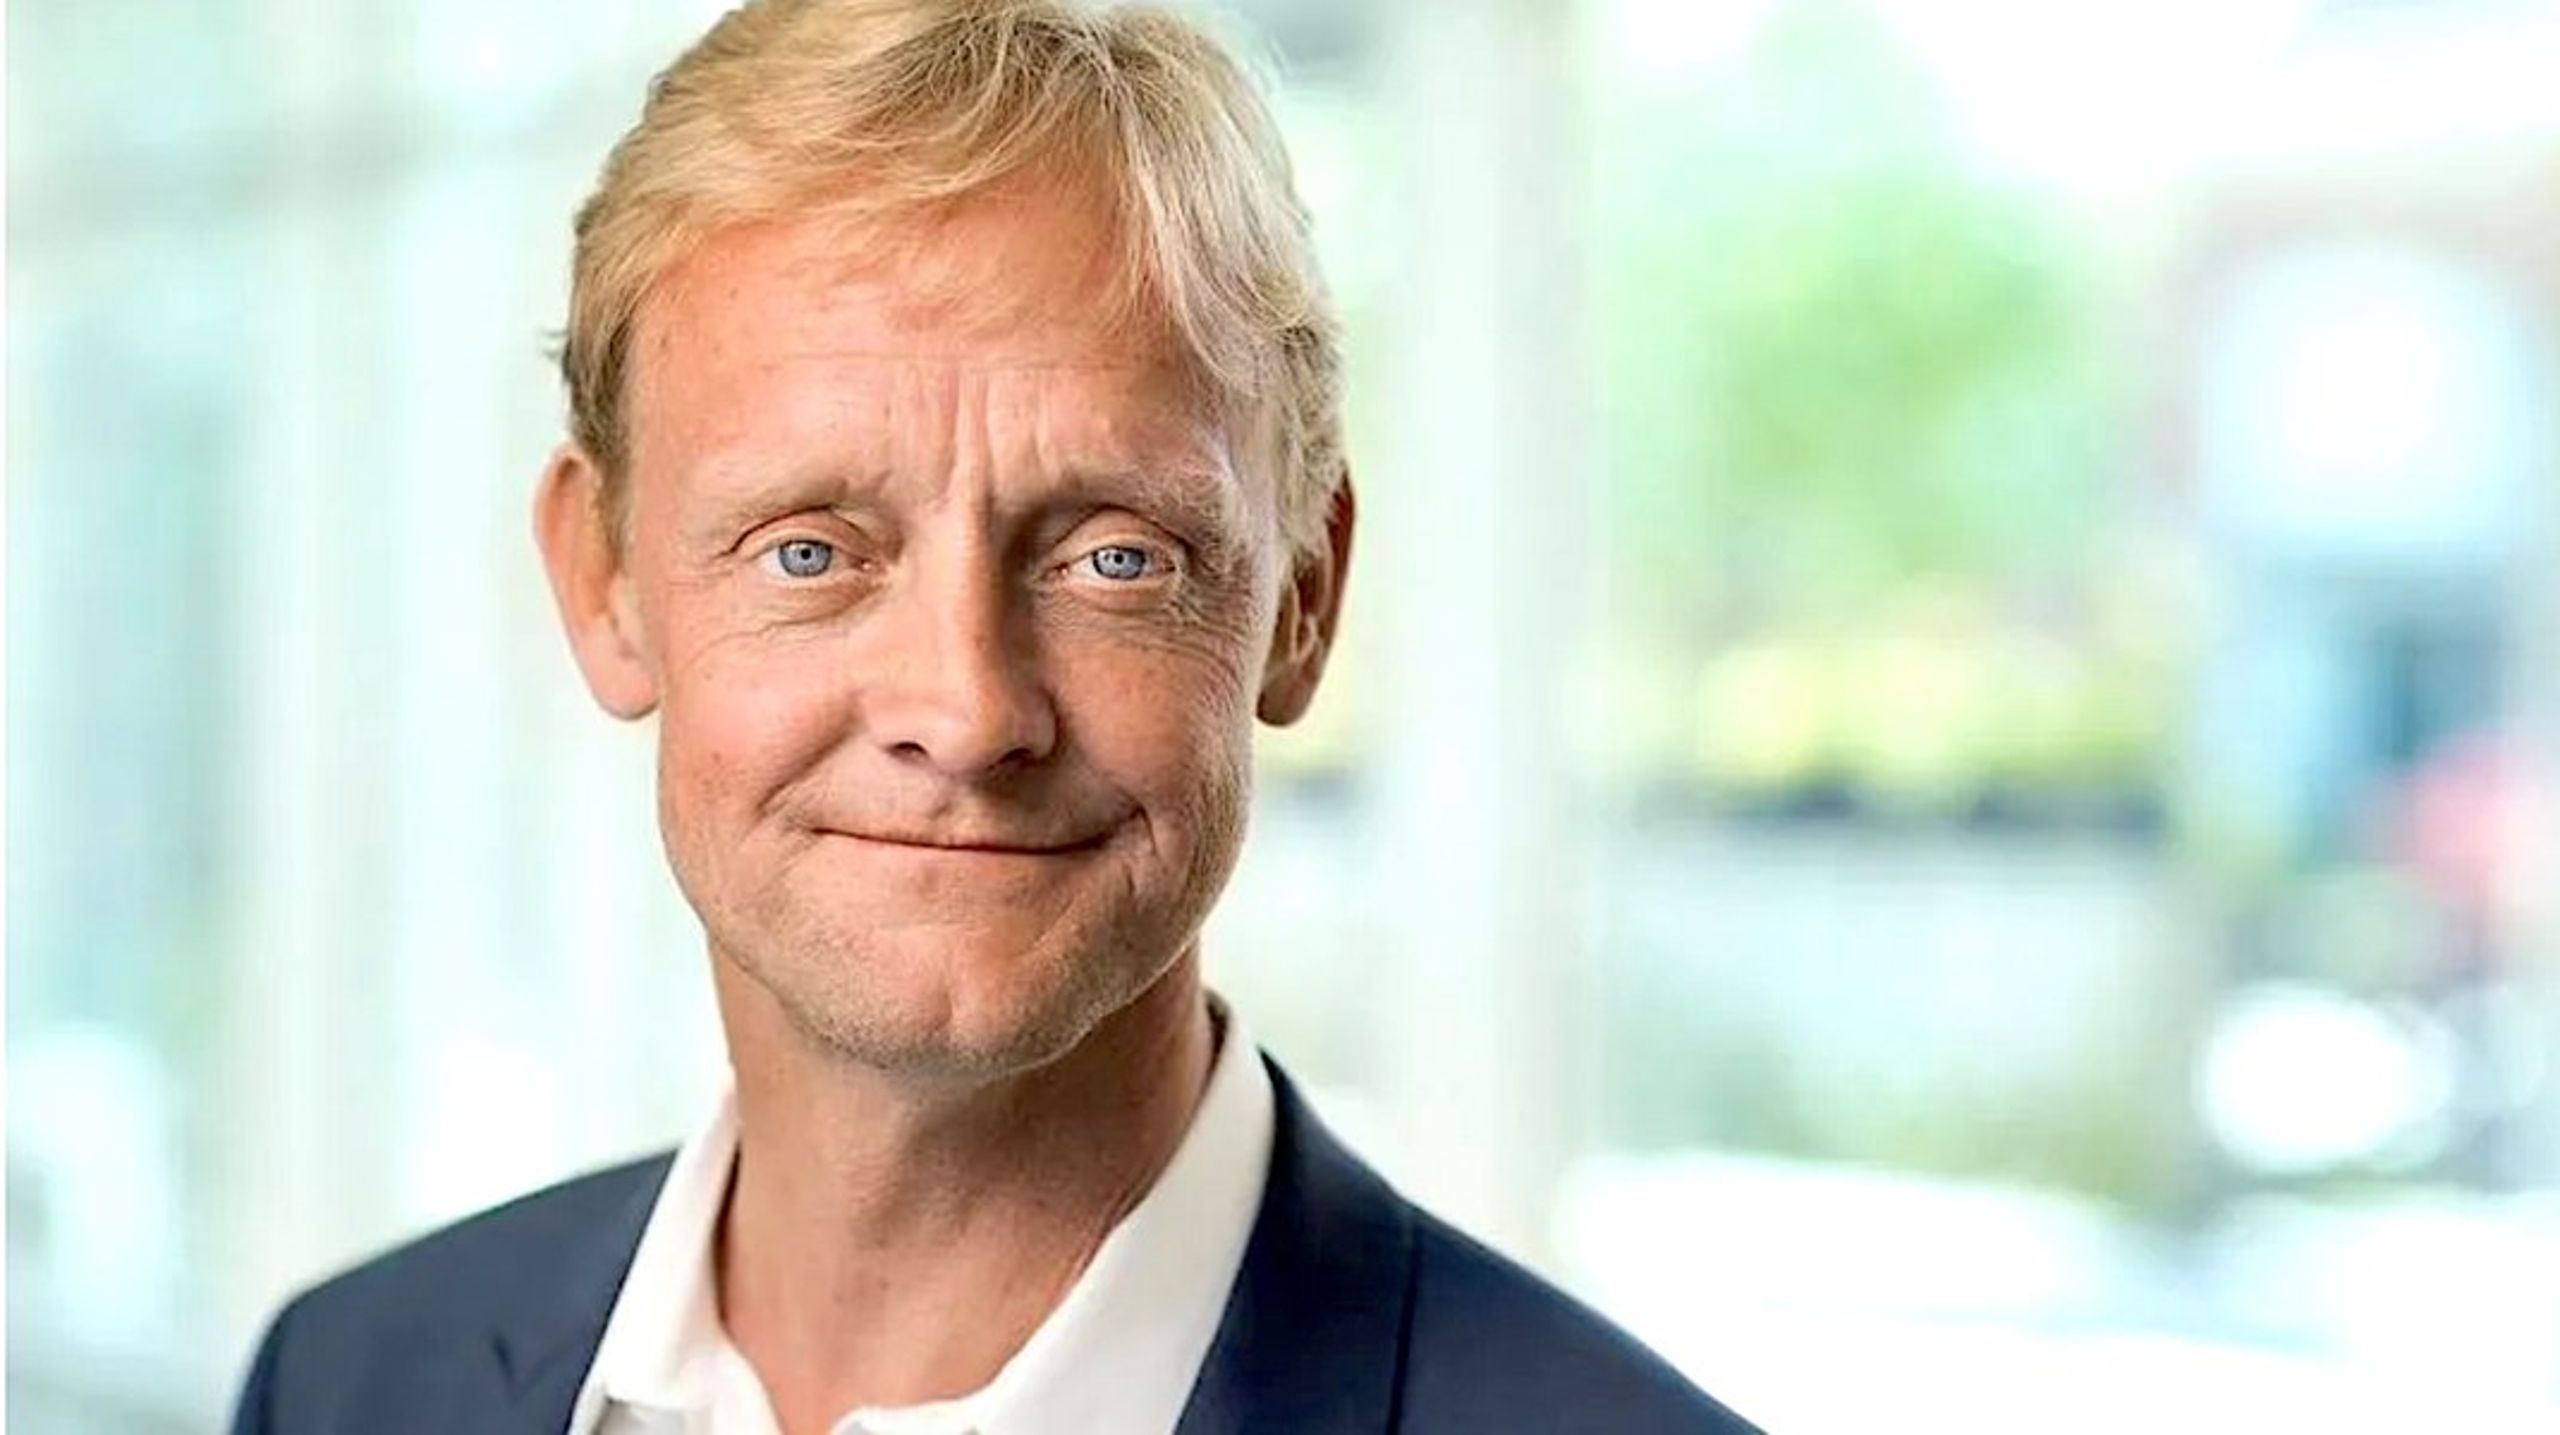 "Altinget er en super spændende virksomhed, som jeg har fulgt i mange år," siger det nye bestyrelsesmedlem, 56-årige&nbsp;Peter Normann, der til daglig er finansdirektør i Gyldendal.